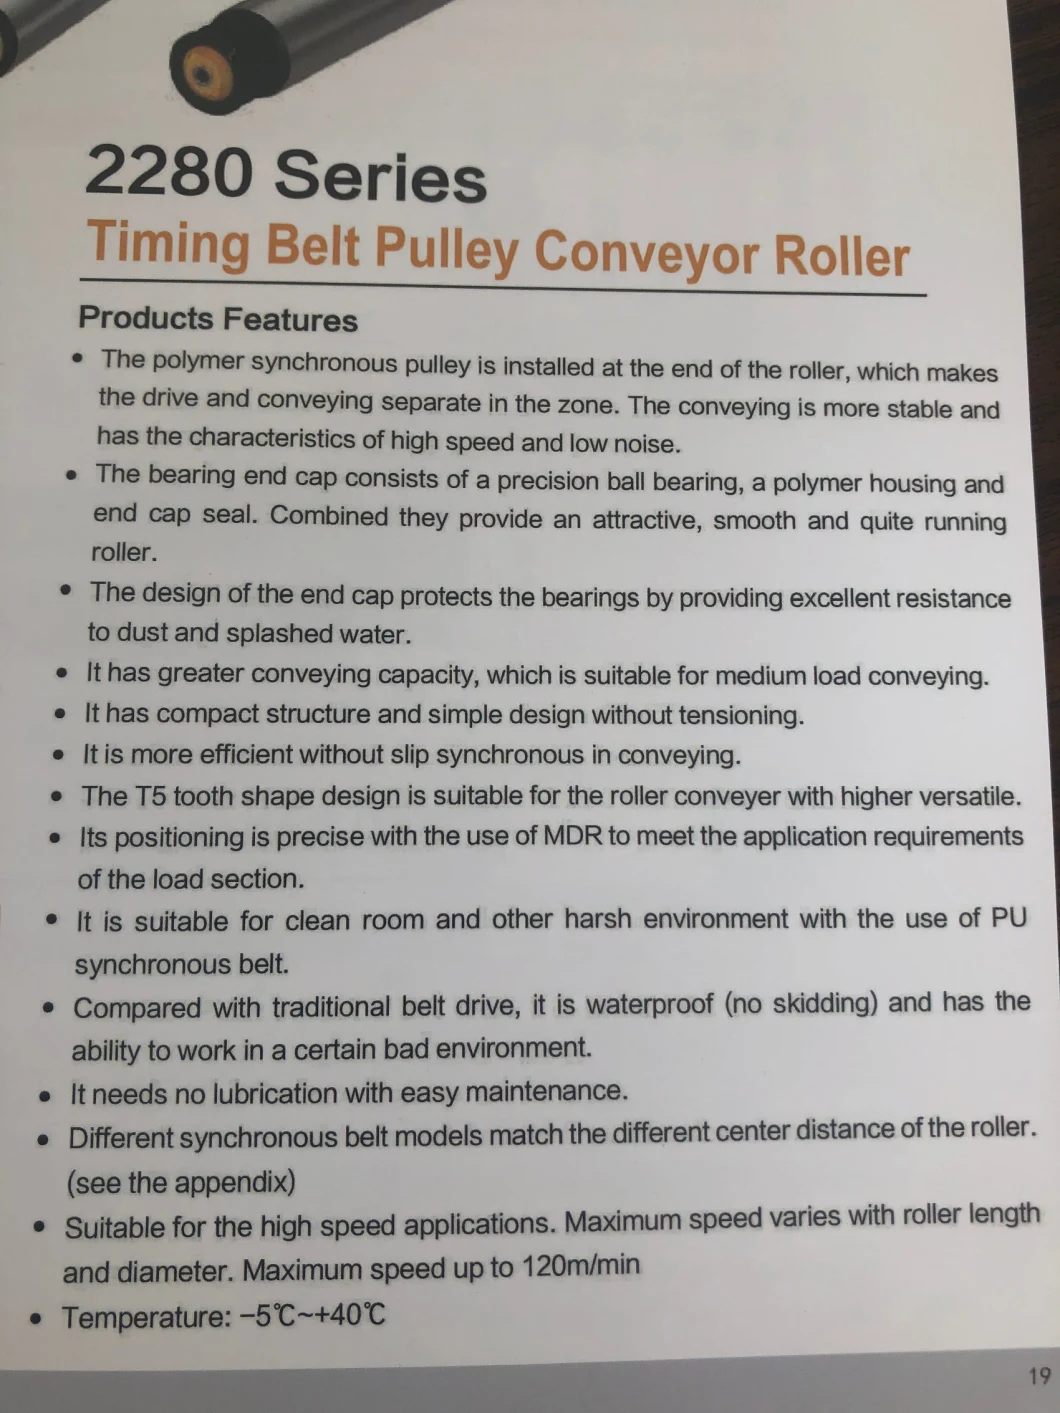 2280 Series Timing Belt Pulley Carbon Steel Conveyor Roller